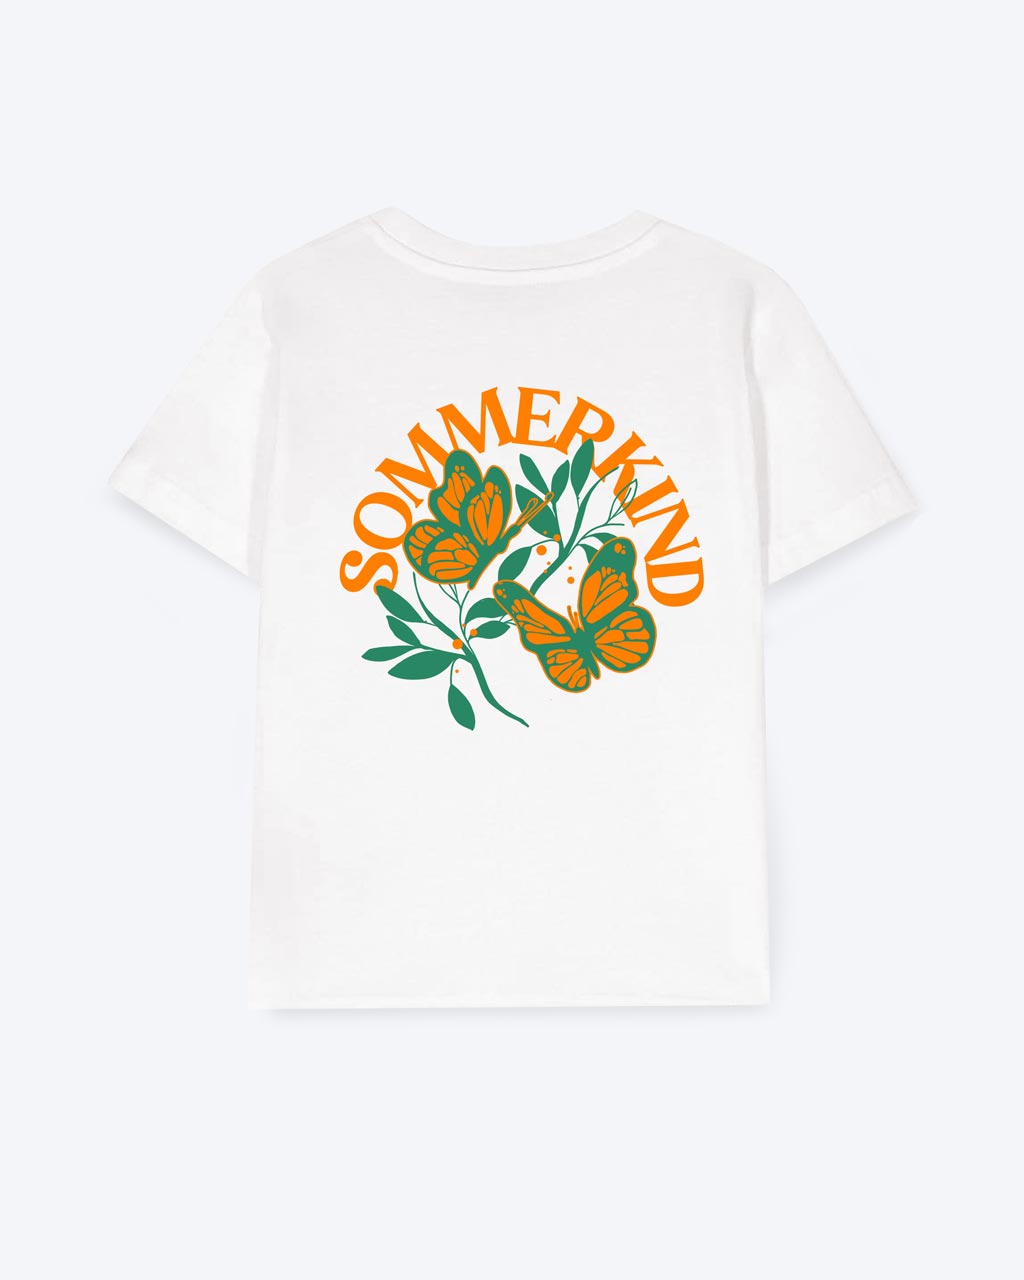 Weißes T-Shirt mit einem Schmetterlings Motiv, die über einem grünen Ast fliegen,  und einer orangen 